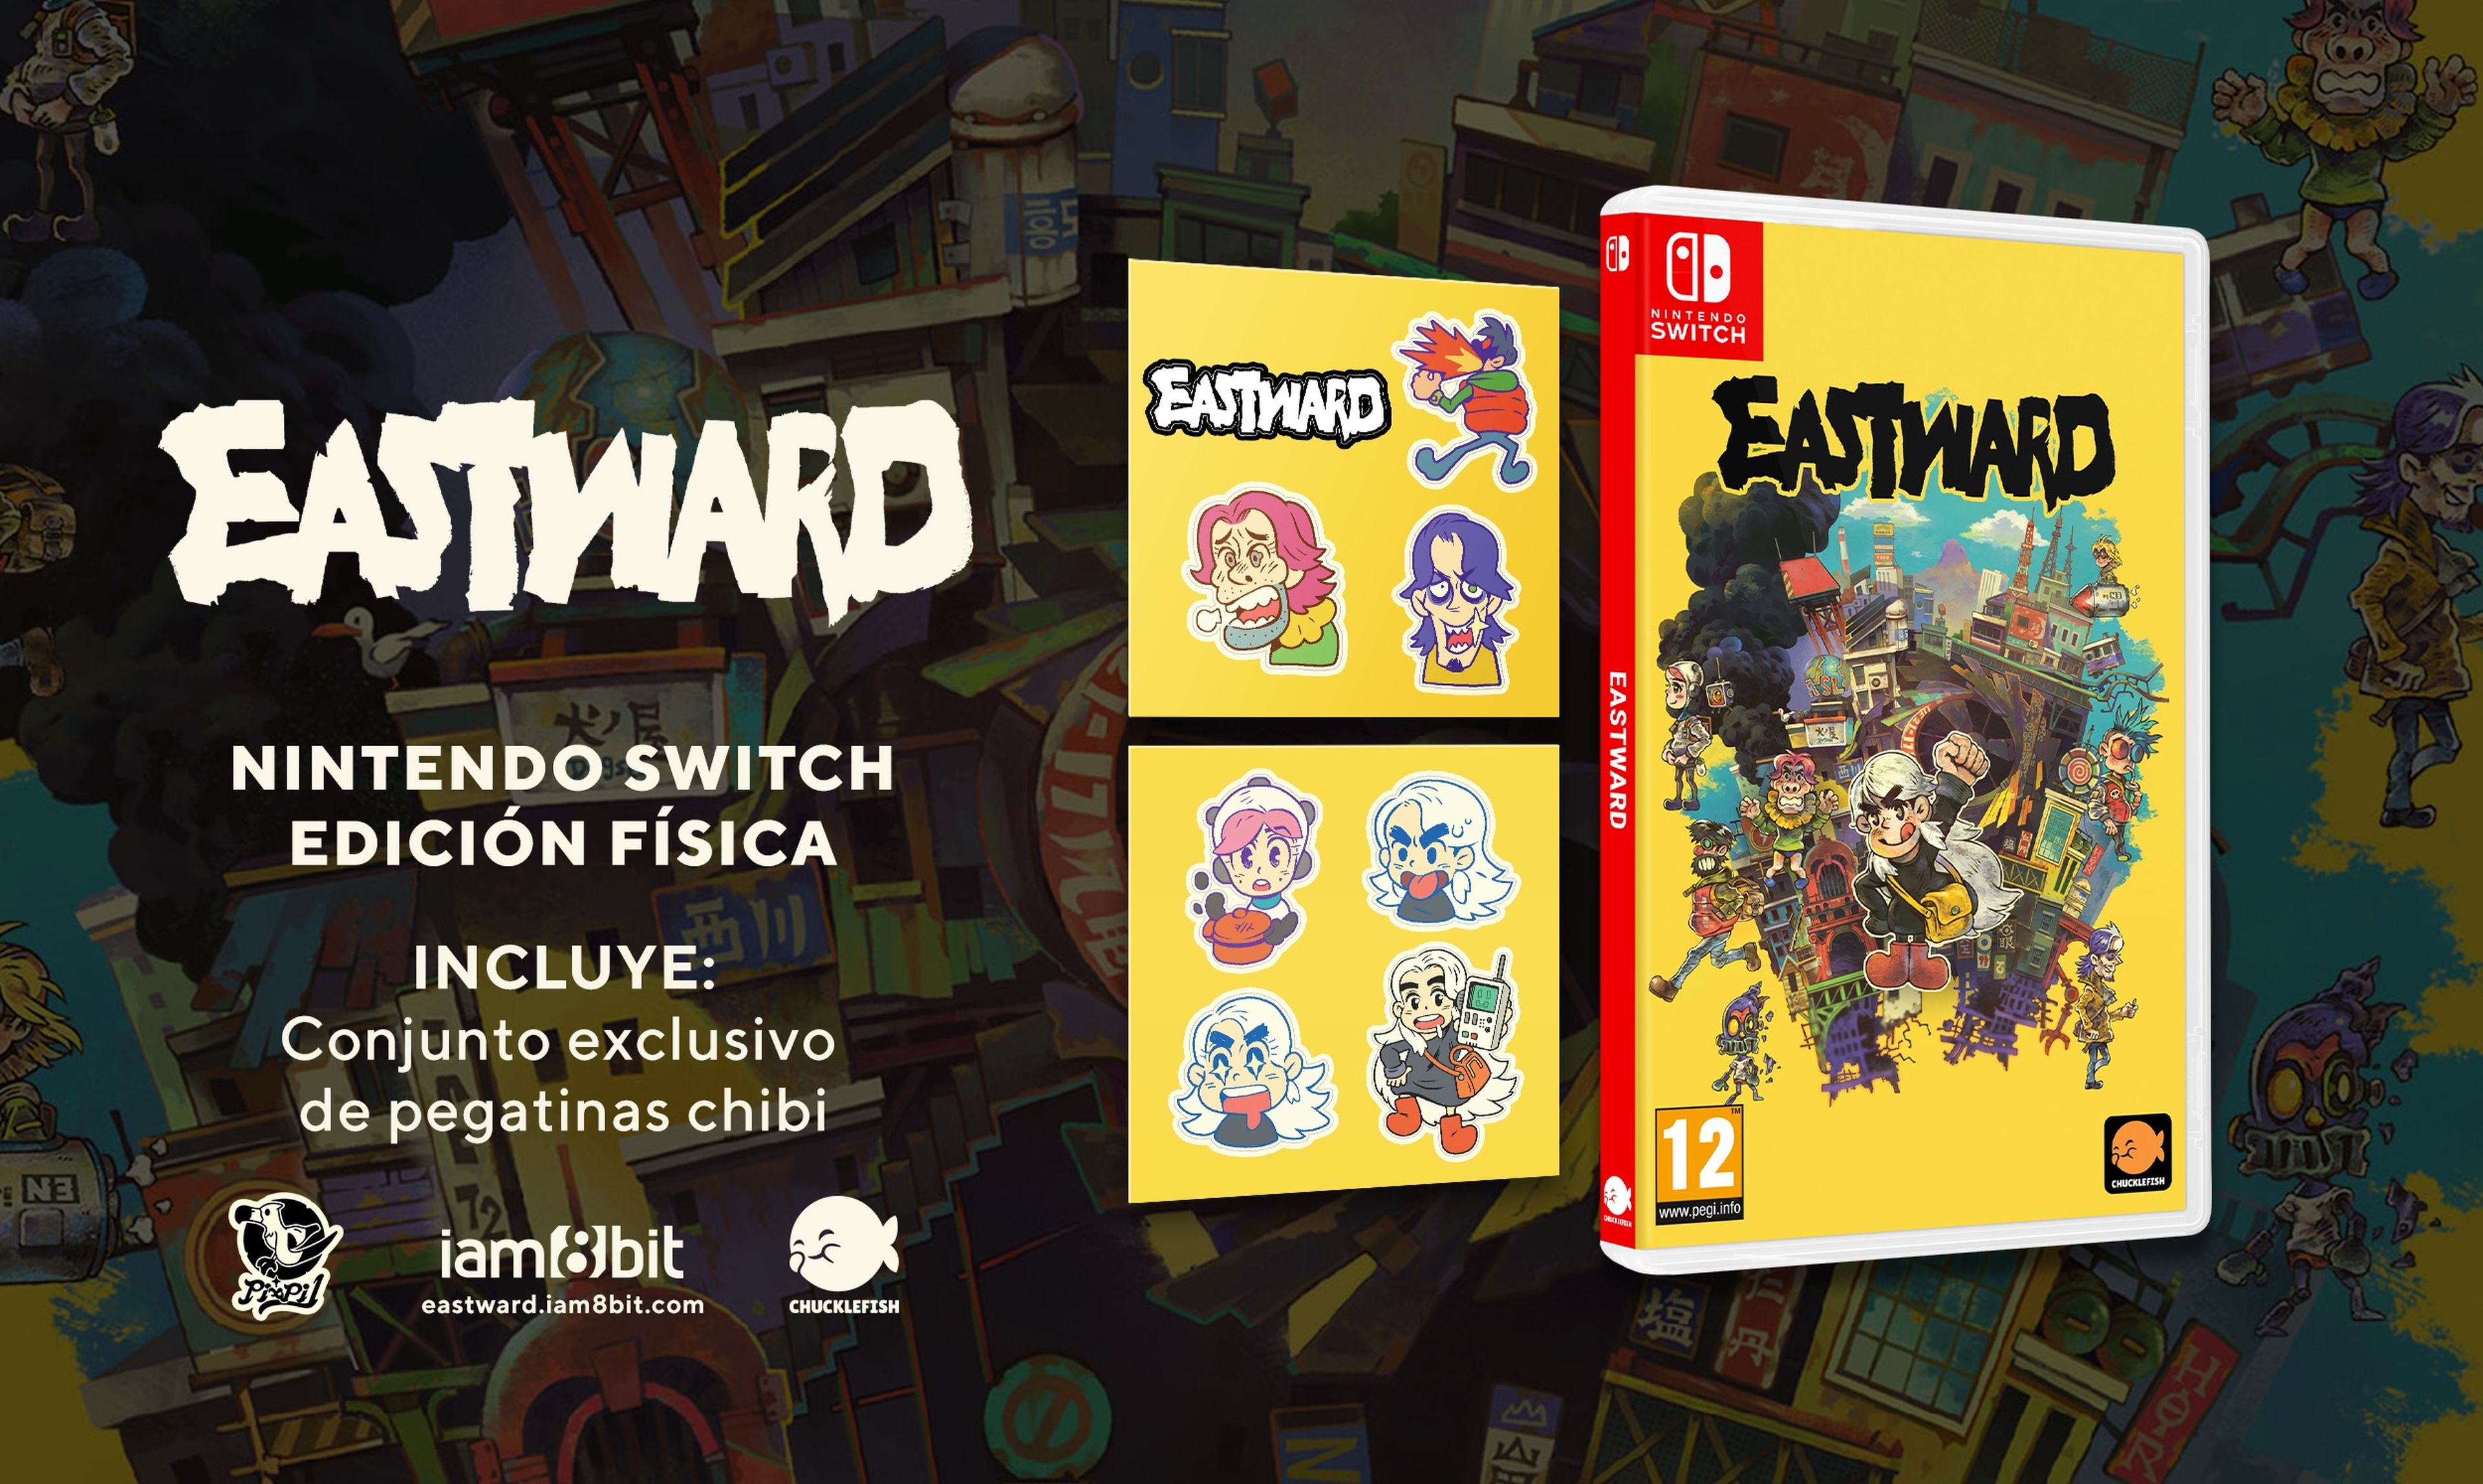 Eastward edición física para Nintendo Switch